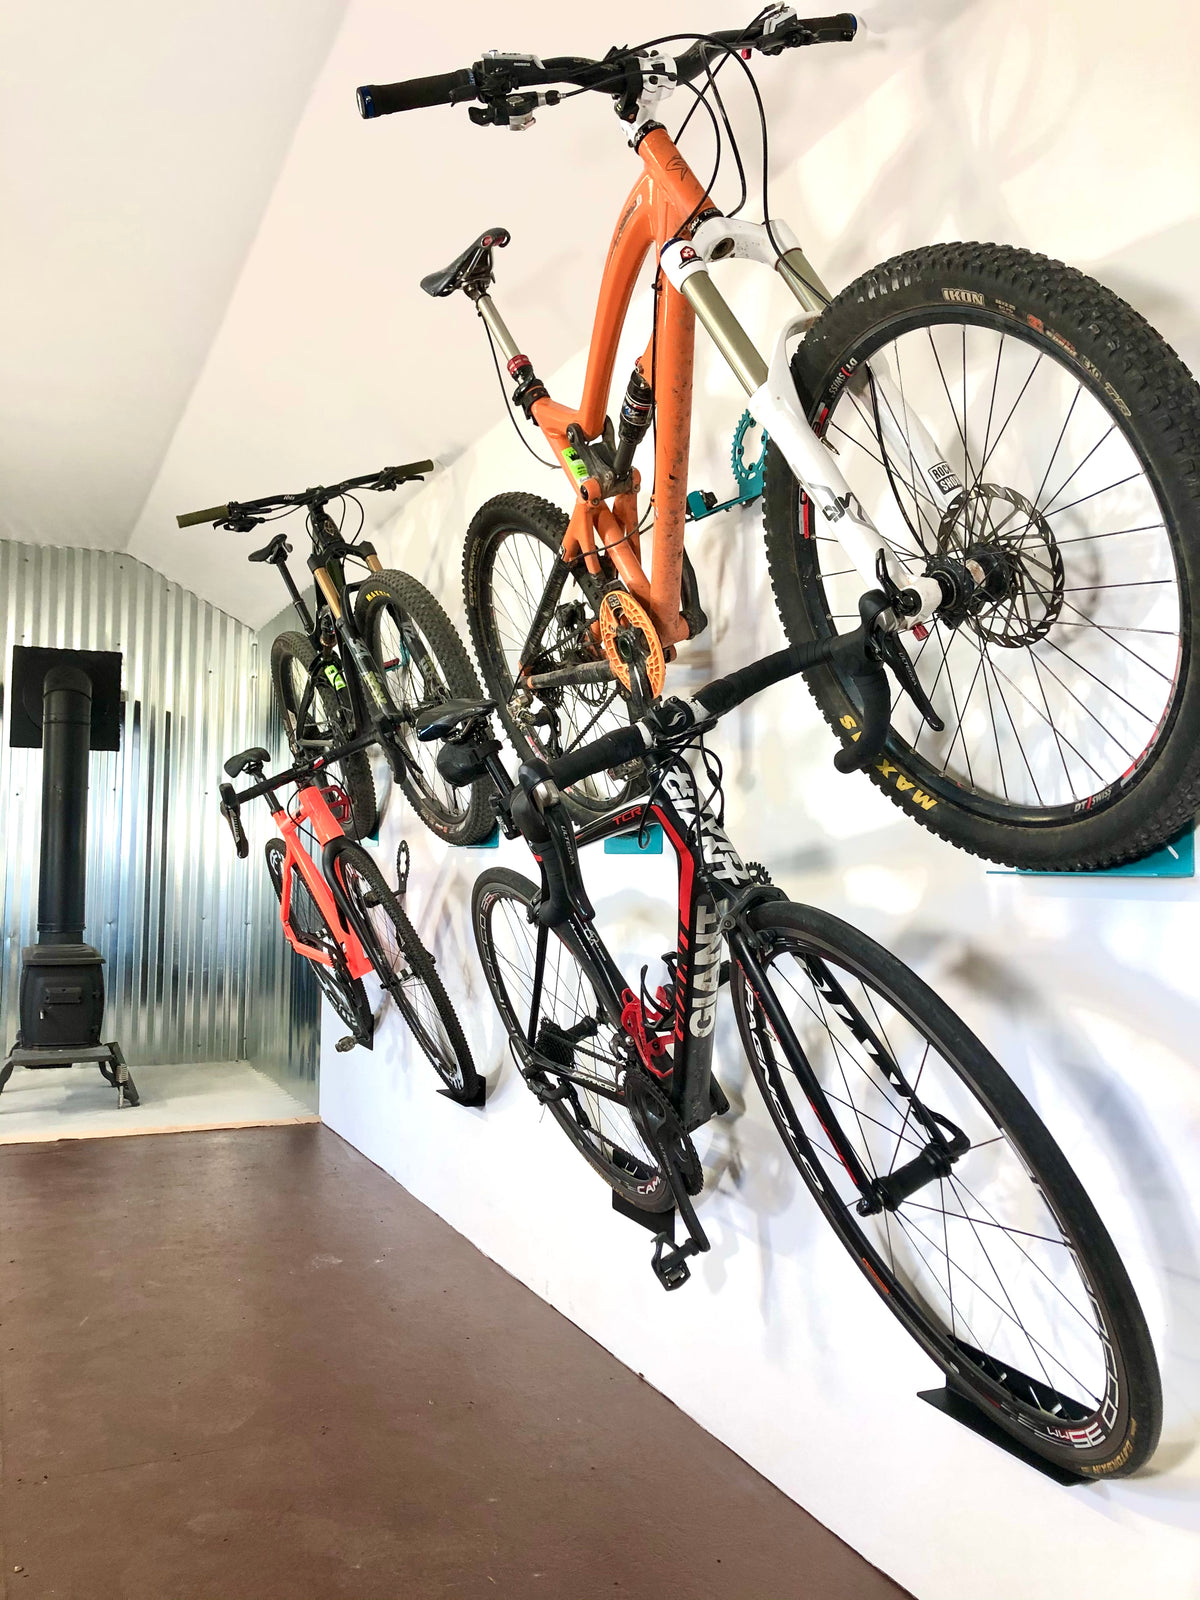 Car Auto Metal Hooks Garage Storage Wall Mount Bicycle Hanger